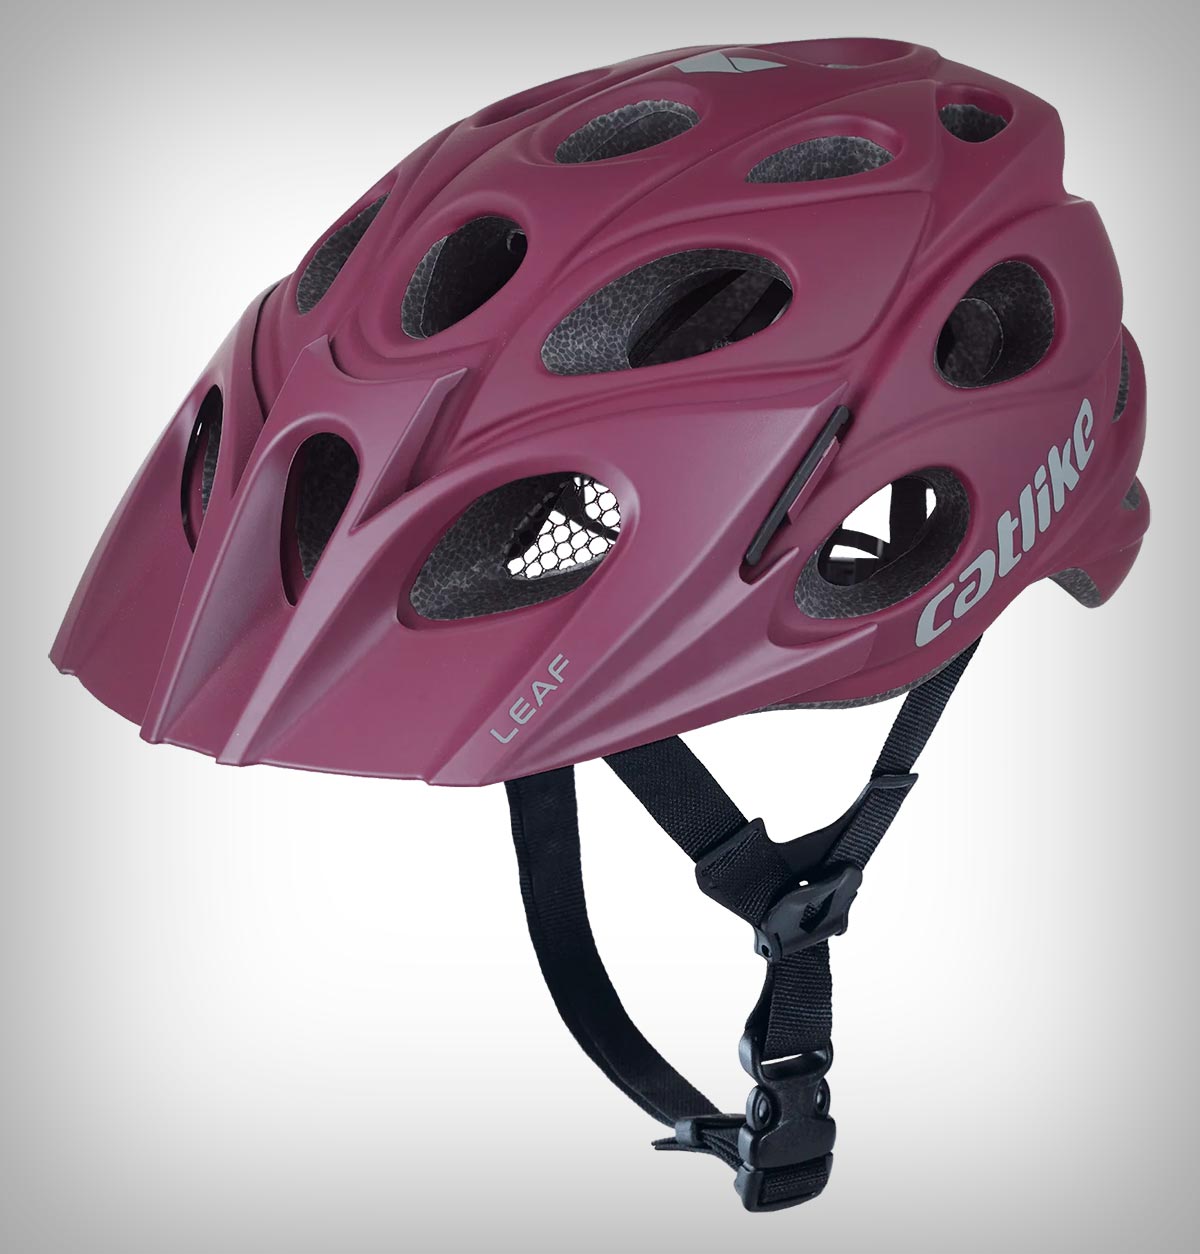 Nuevos colores para el Catlike Leaf, un casco de MTB de estilo único diseñado para ciclistas principiantes